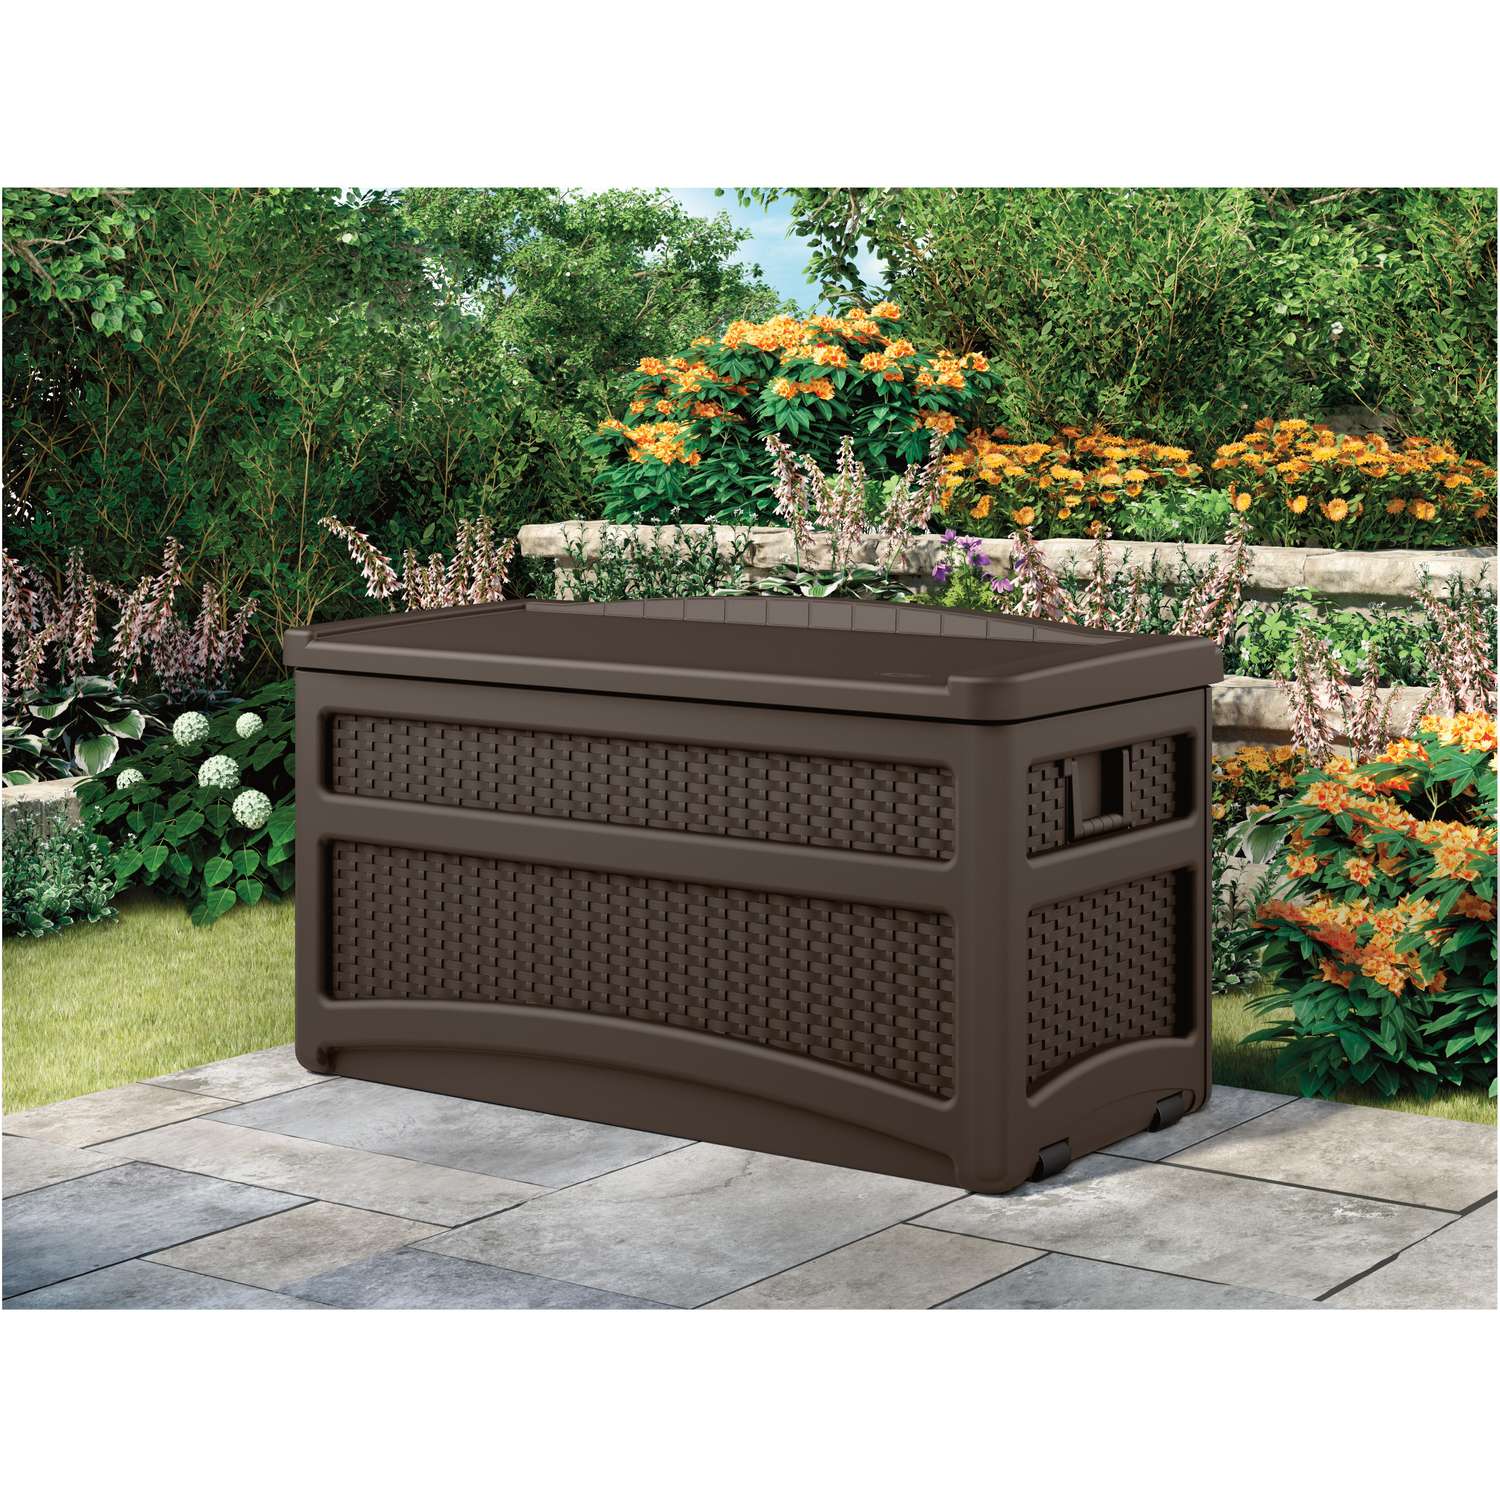 waterproofing - How to waterproof outdoor storage bench? - Home Improvement  Stack Exchange